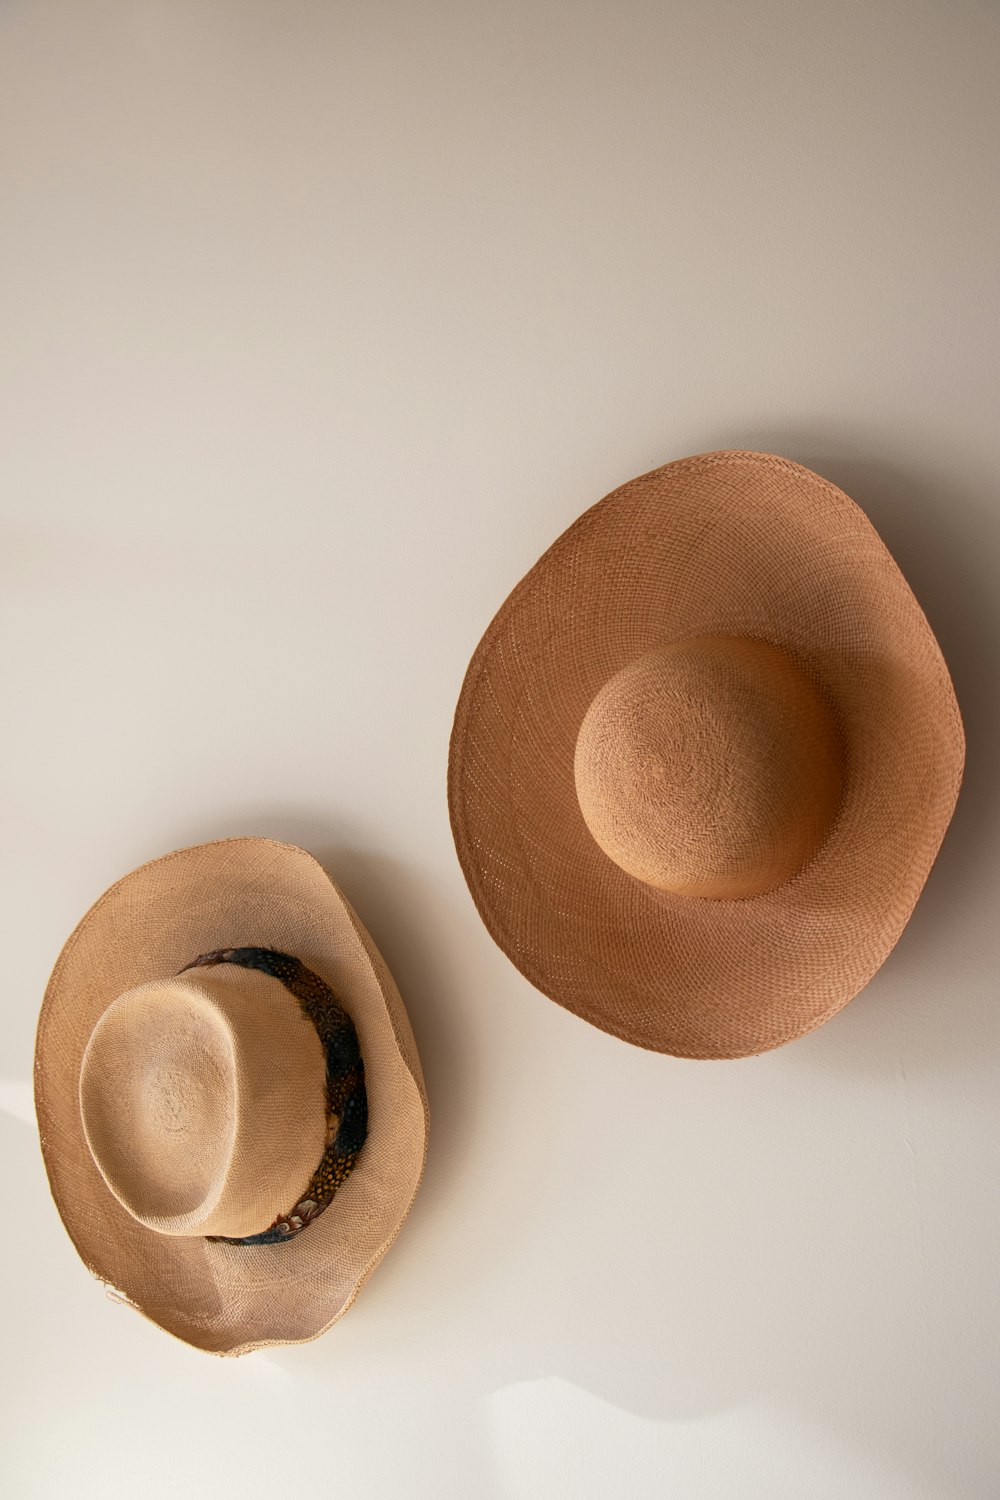 chapeau marron sur surface blanche